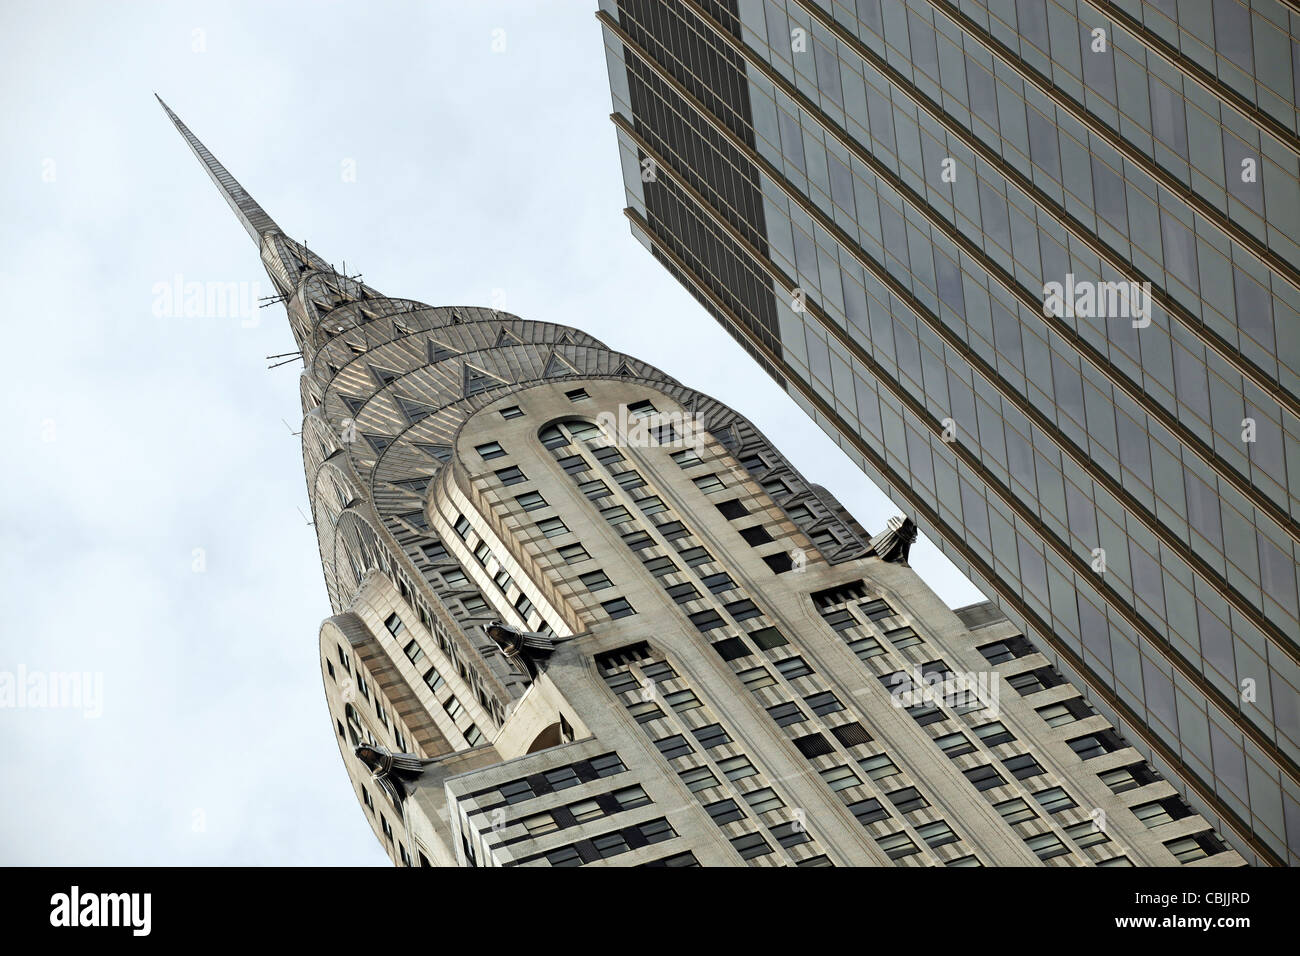 L'architettura art deco del Chrysler Building di New York, Stati Uniti d'America Foto Stock